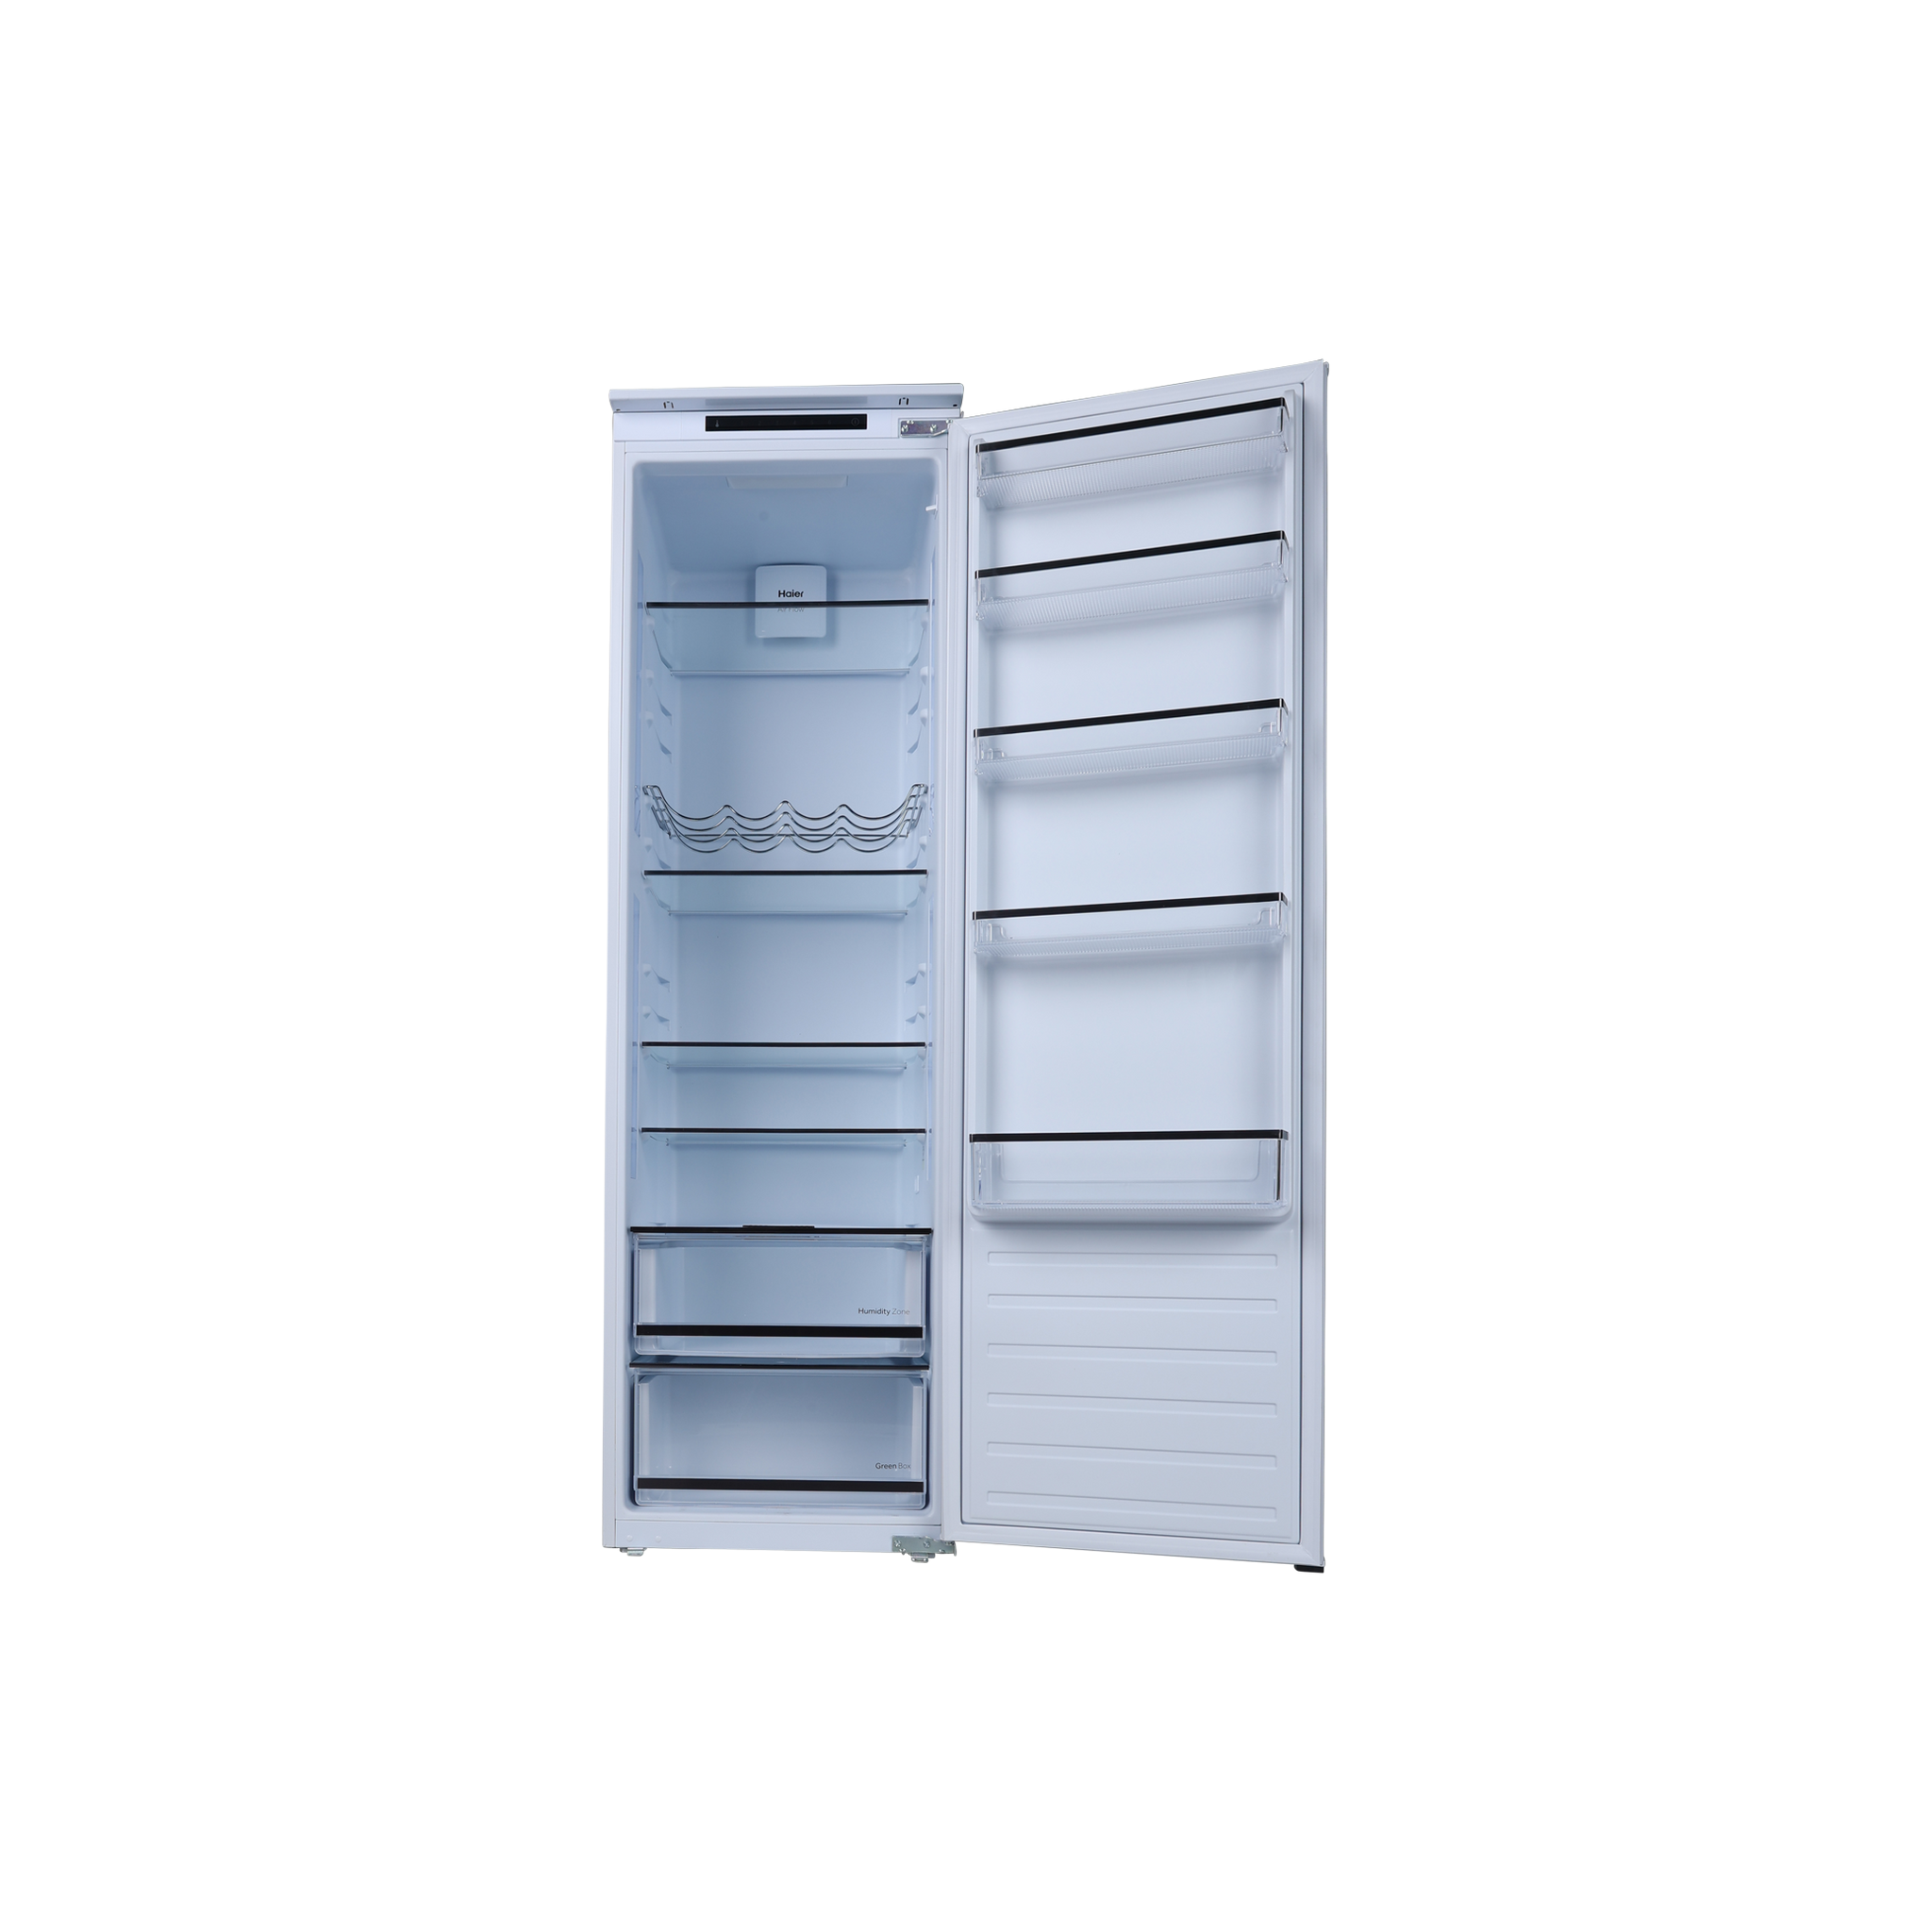 Réfrigérateur 1 porte encastrable HAIER HLE172